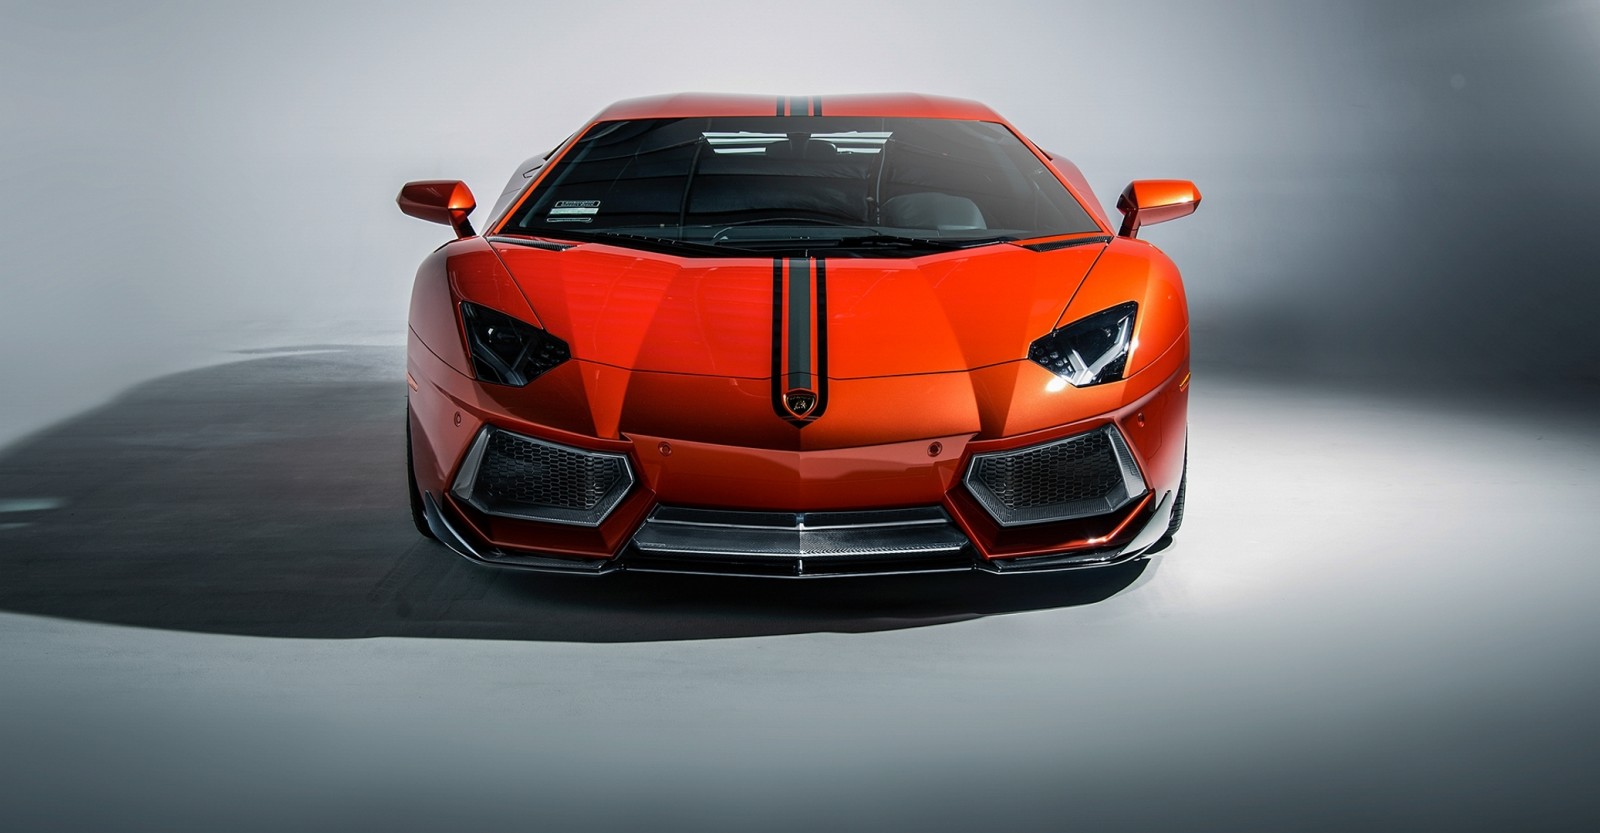 wajah, Lamborghini, supercar, Aventador, coupe, Roadster, 2015, lp-700-4